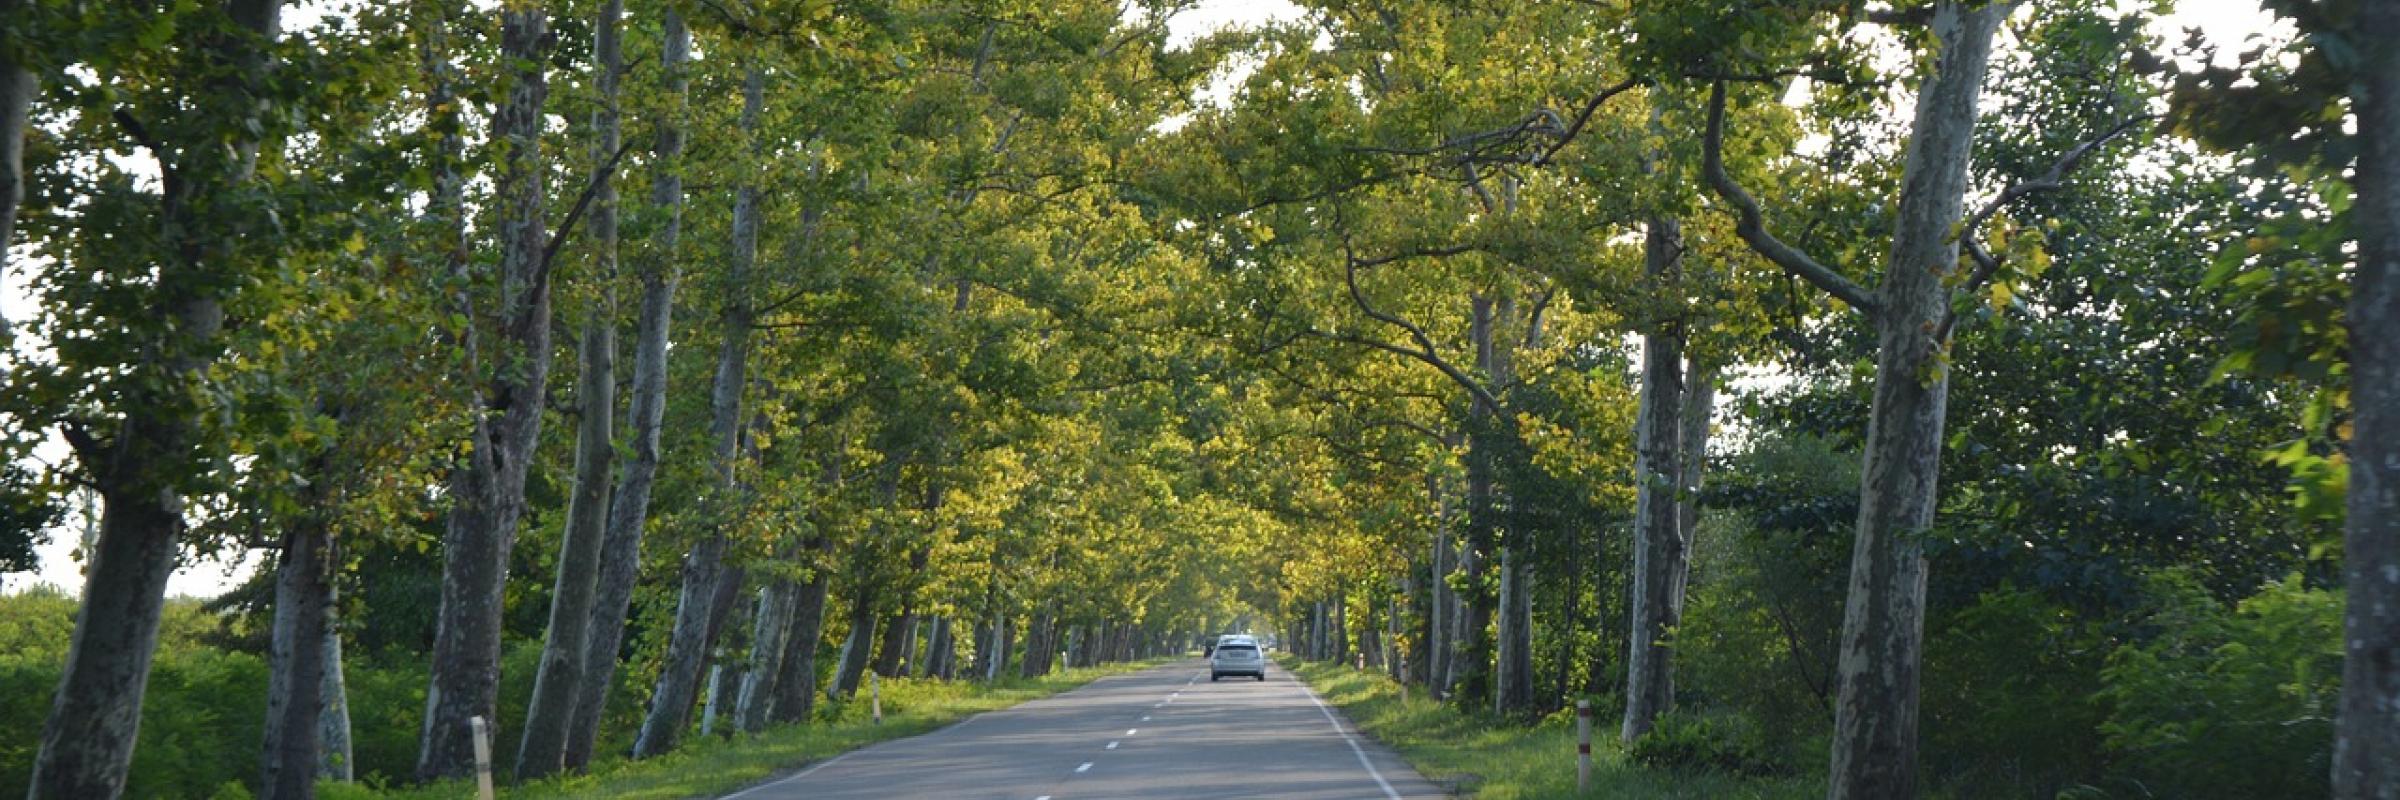 alignement d'arbres en bord de route